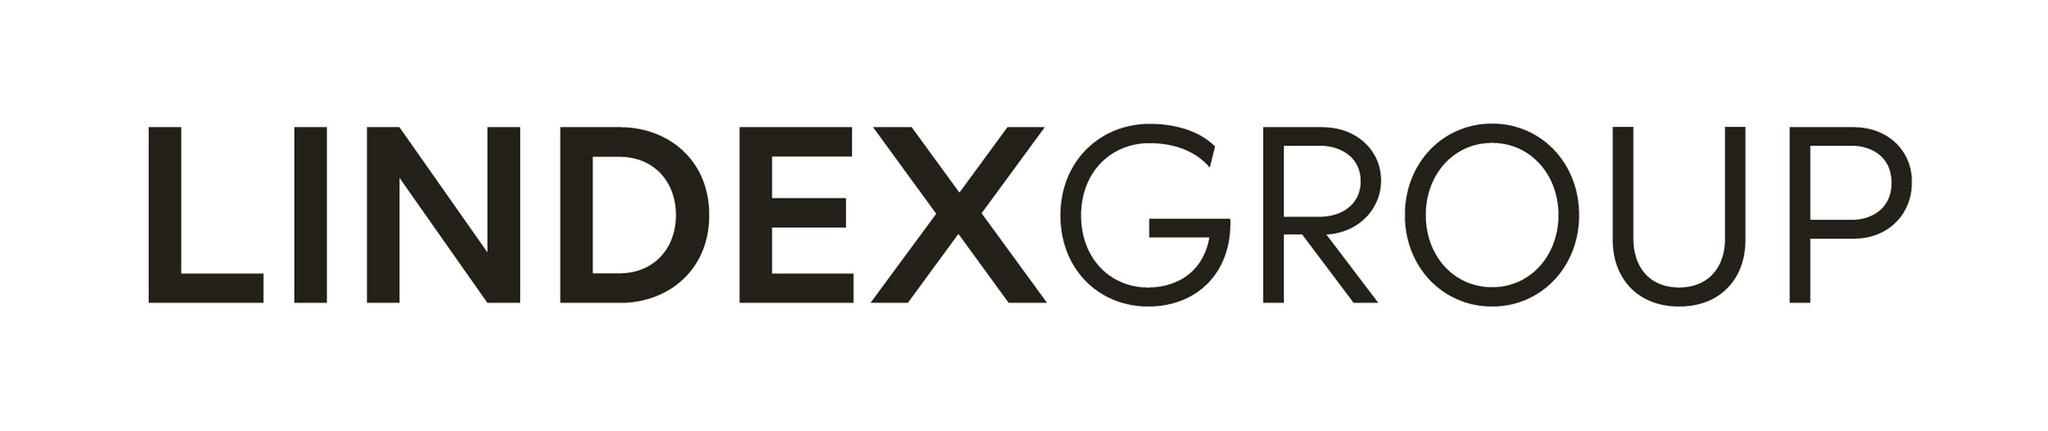 Stockmann Oyj Abp muuttaa nimensä Lindex Group Oyj:ksi. Myös yrityksen logo muuttuu.